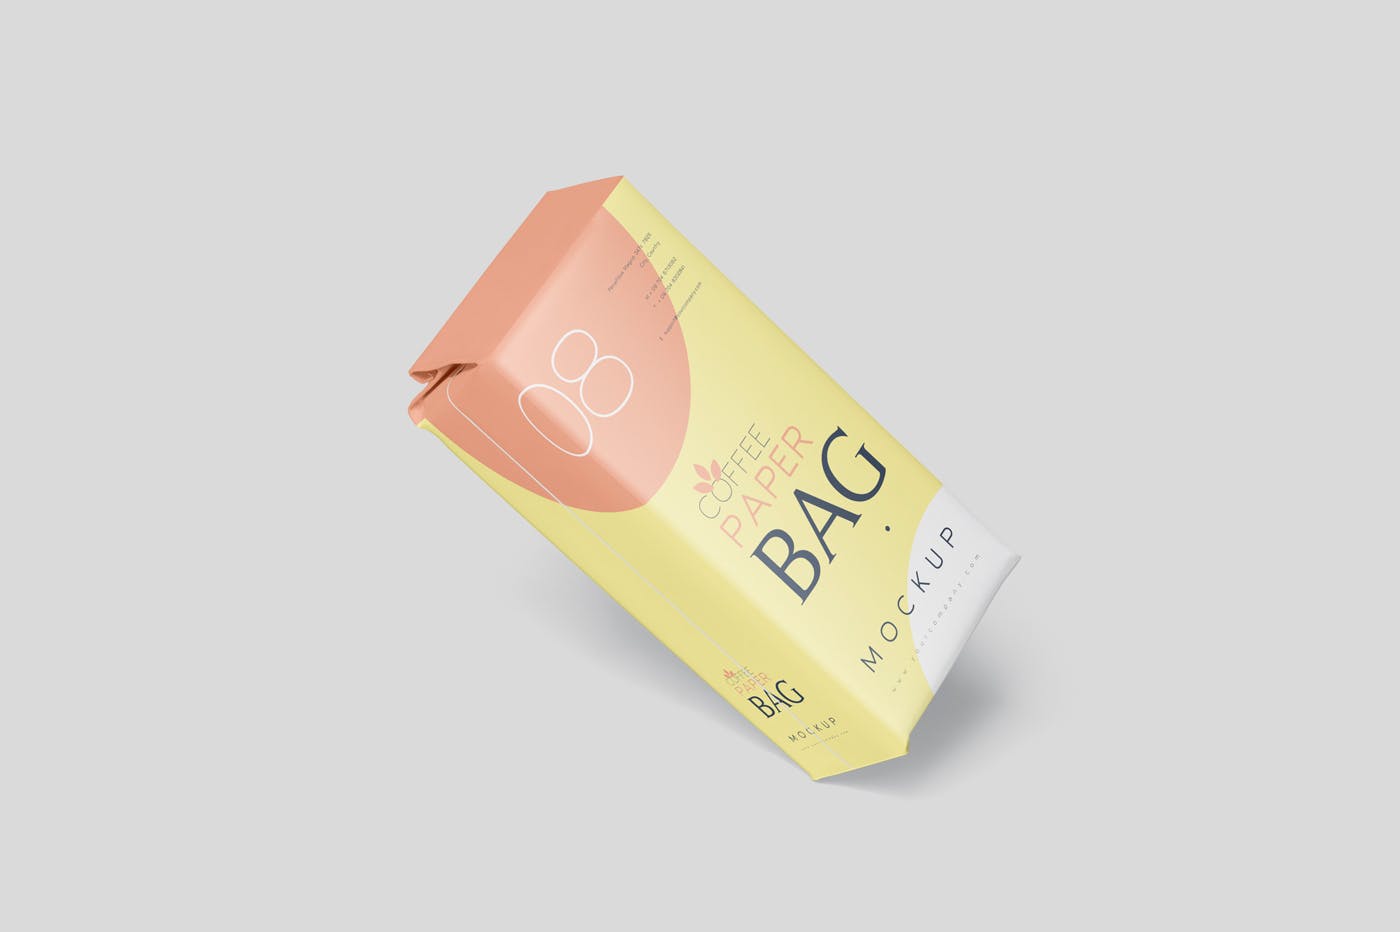 咖啡粉/咖啡豆纸袋包装素材中国精选模板 Coffee Paper Bag Mockup Set插图(4)